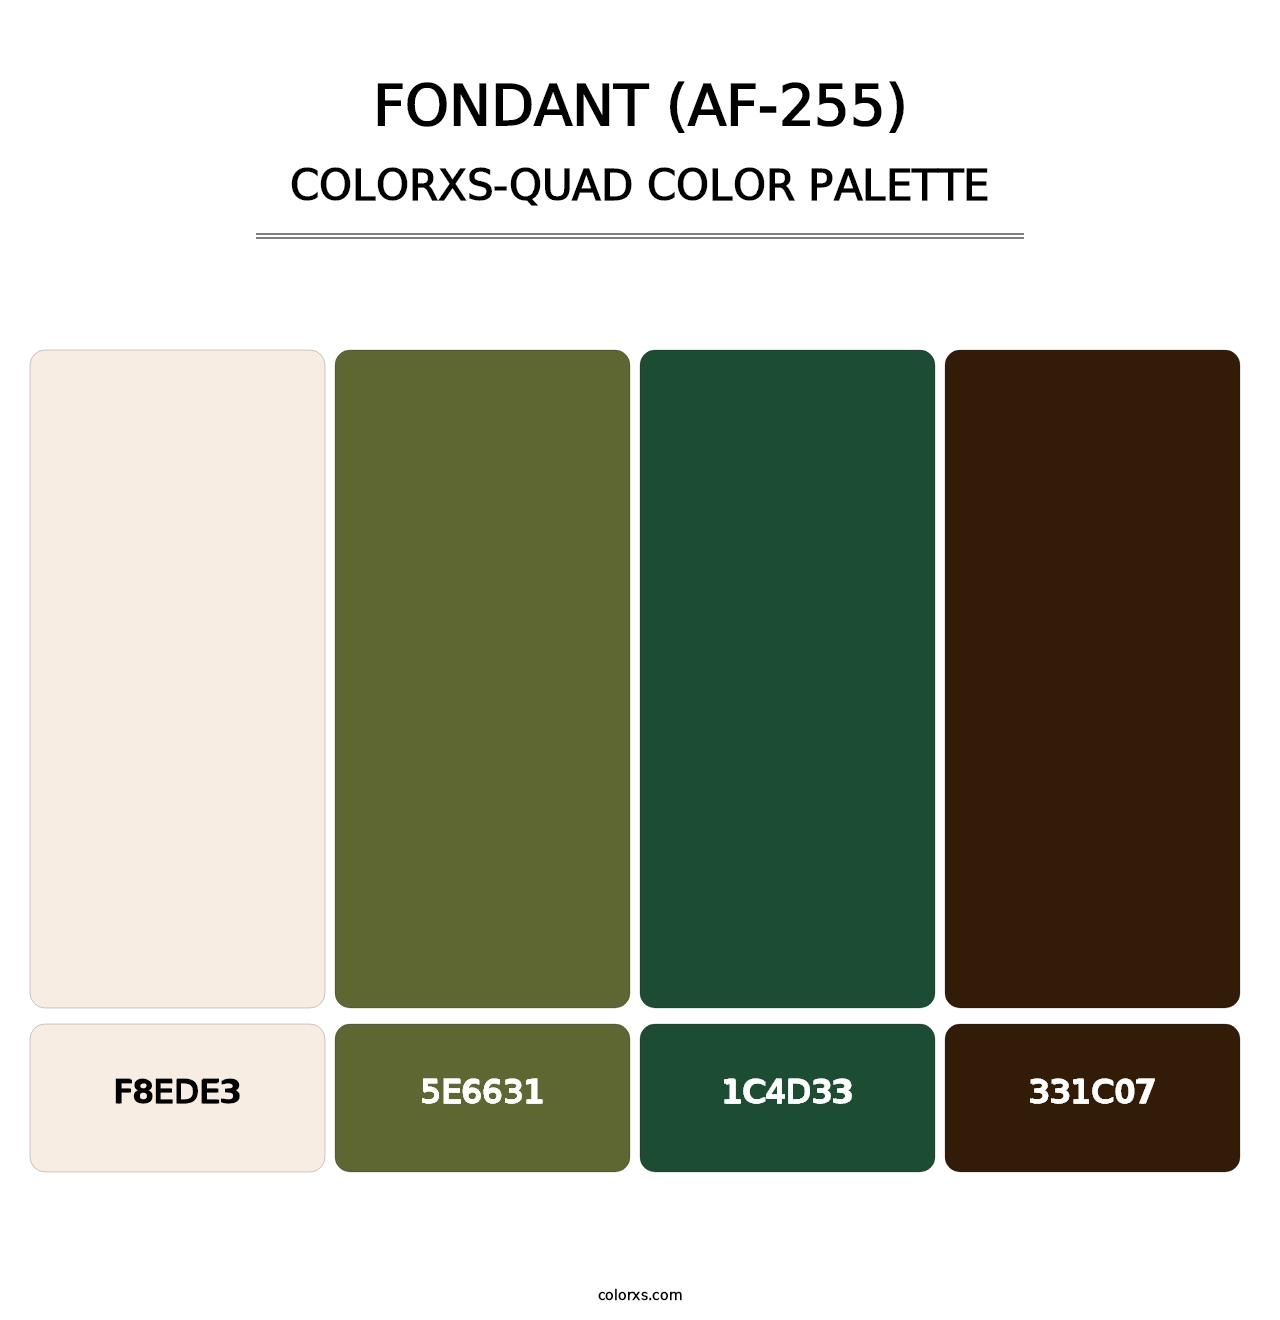 Fondant (AF-255) - Colorxs Quad Palette